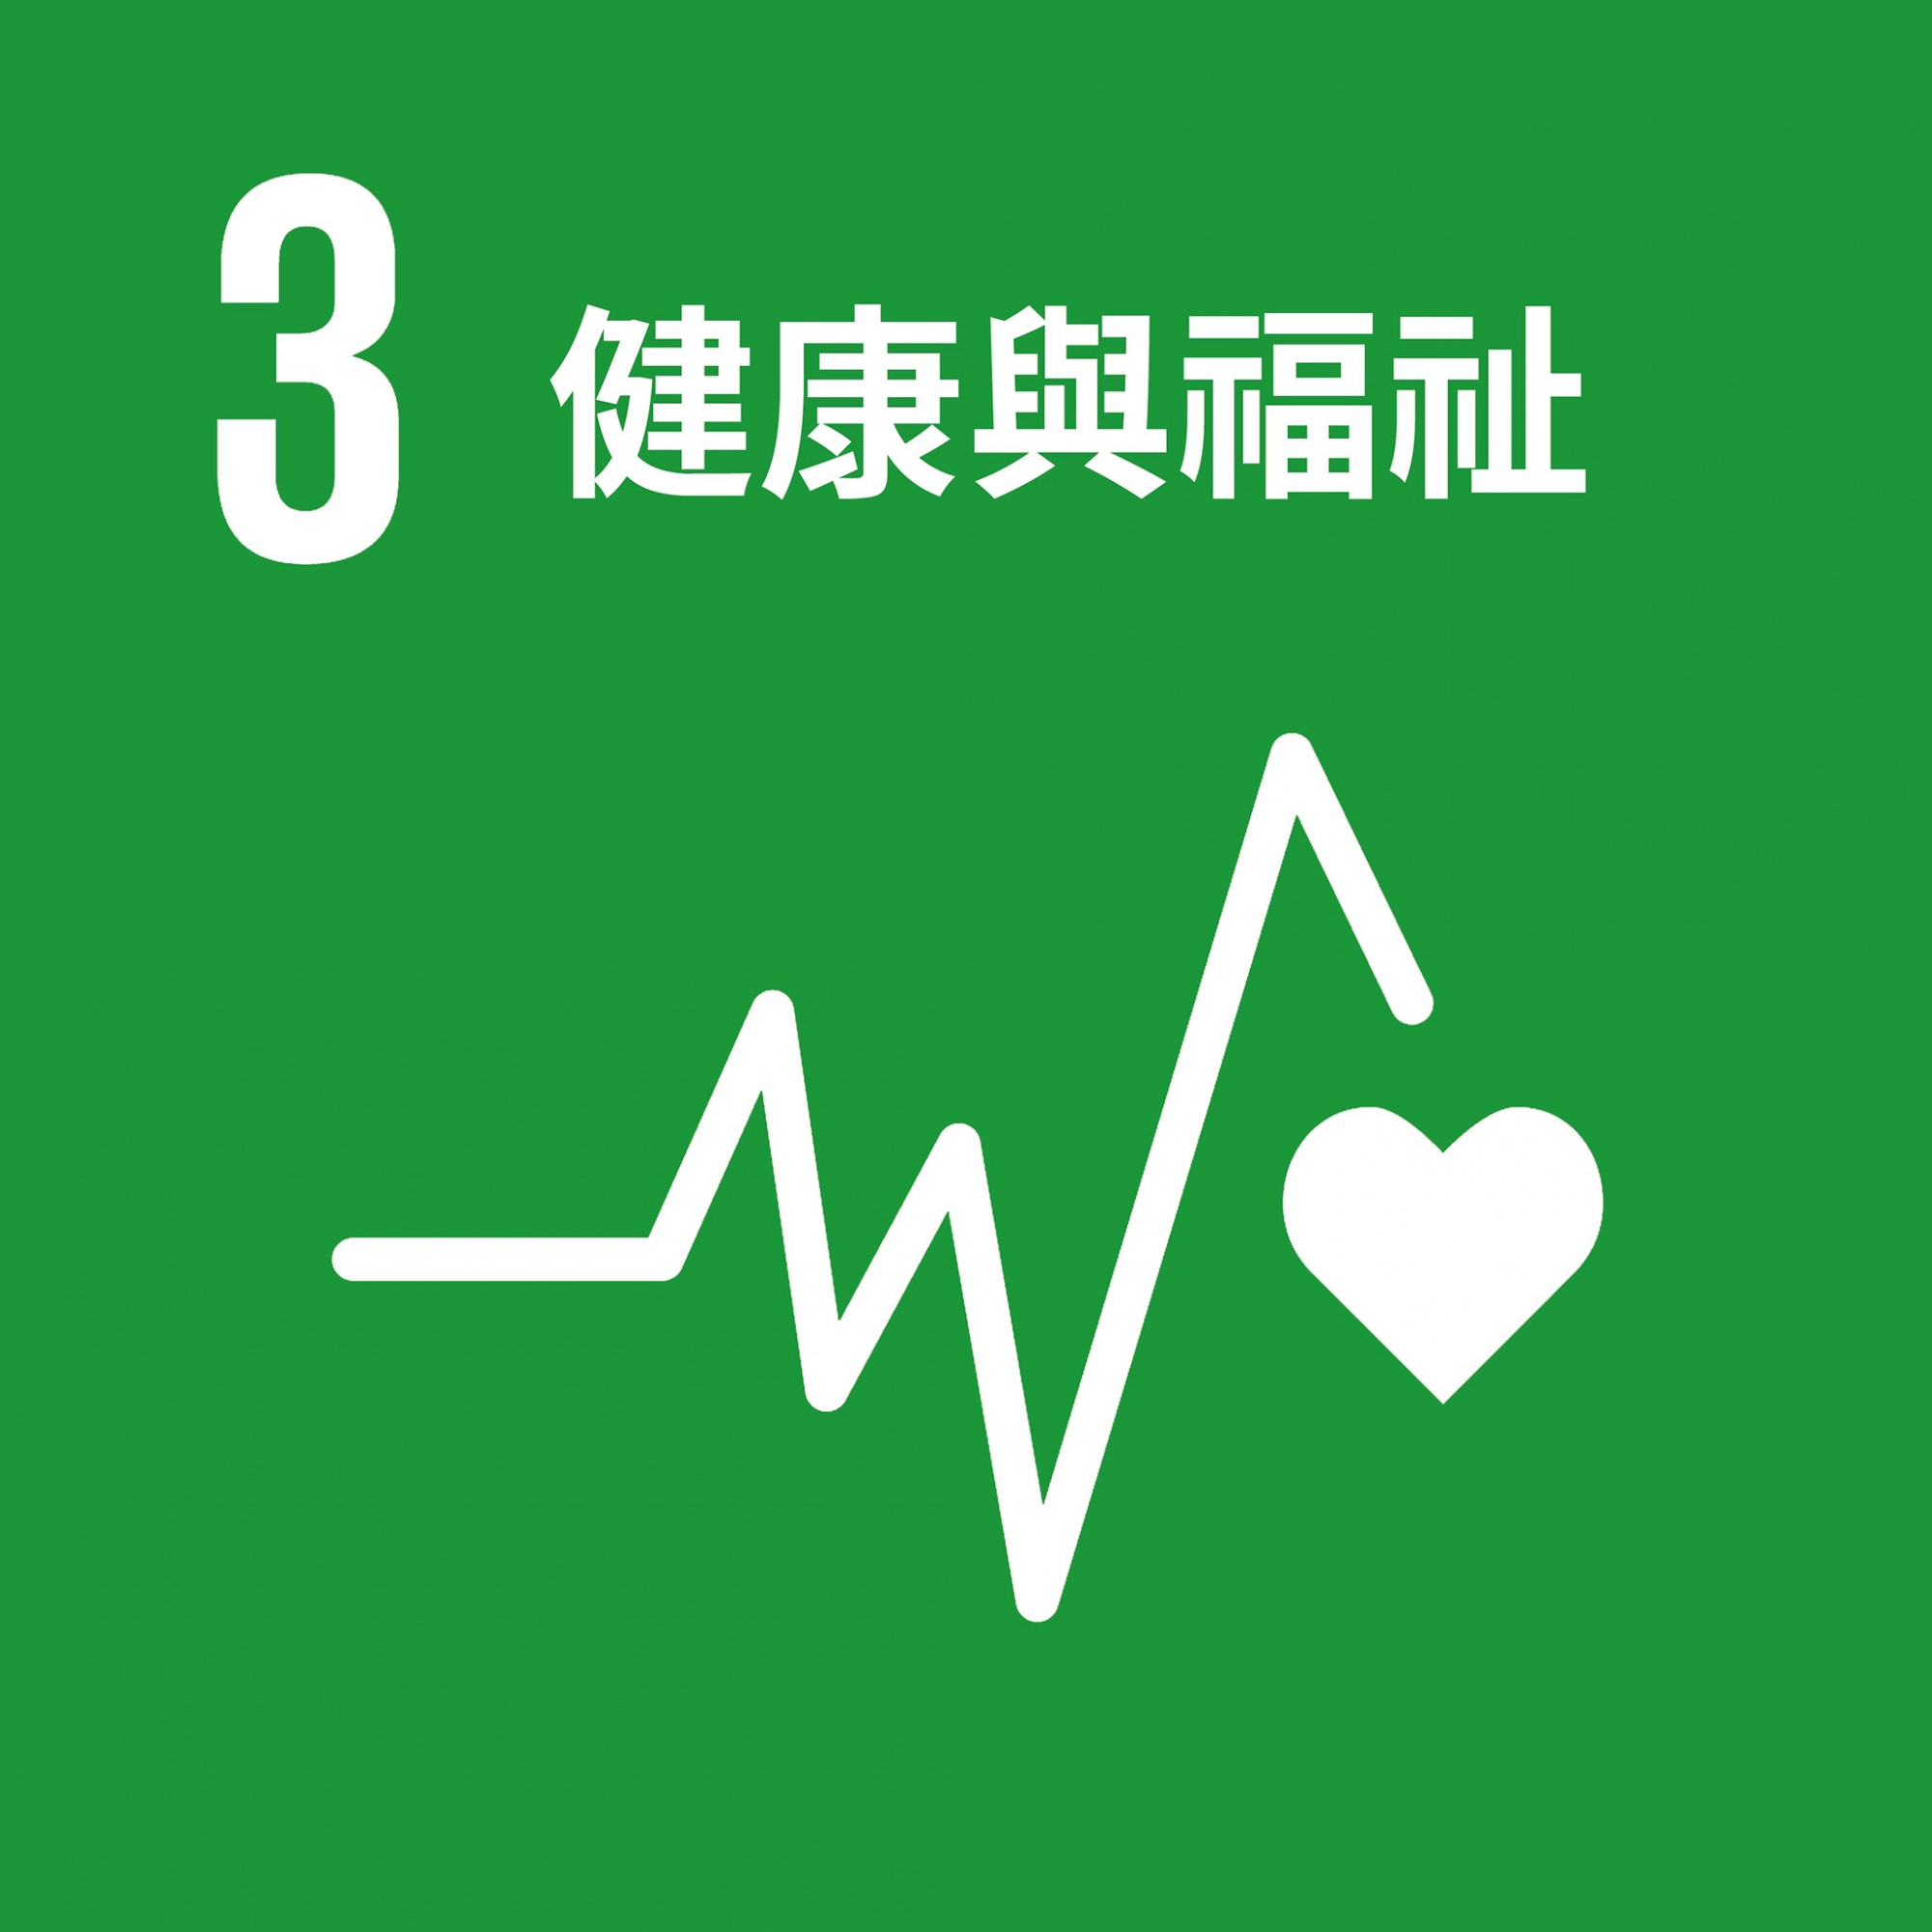 SDG 3.jpeg